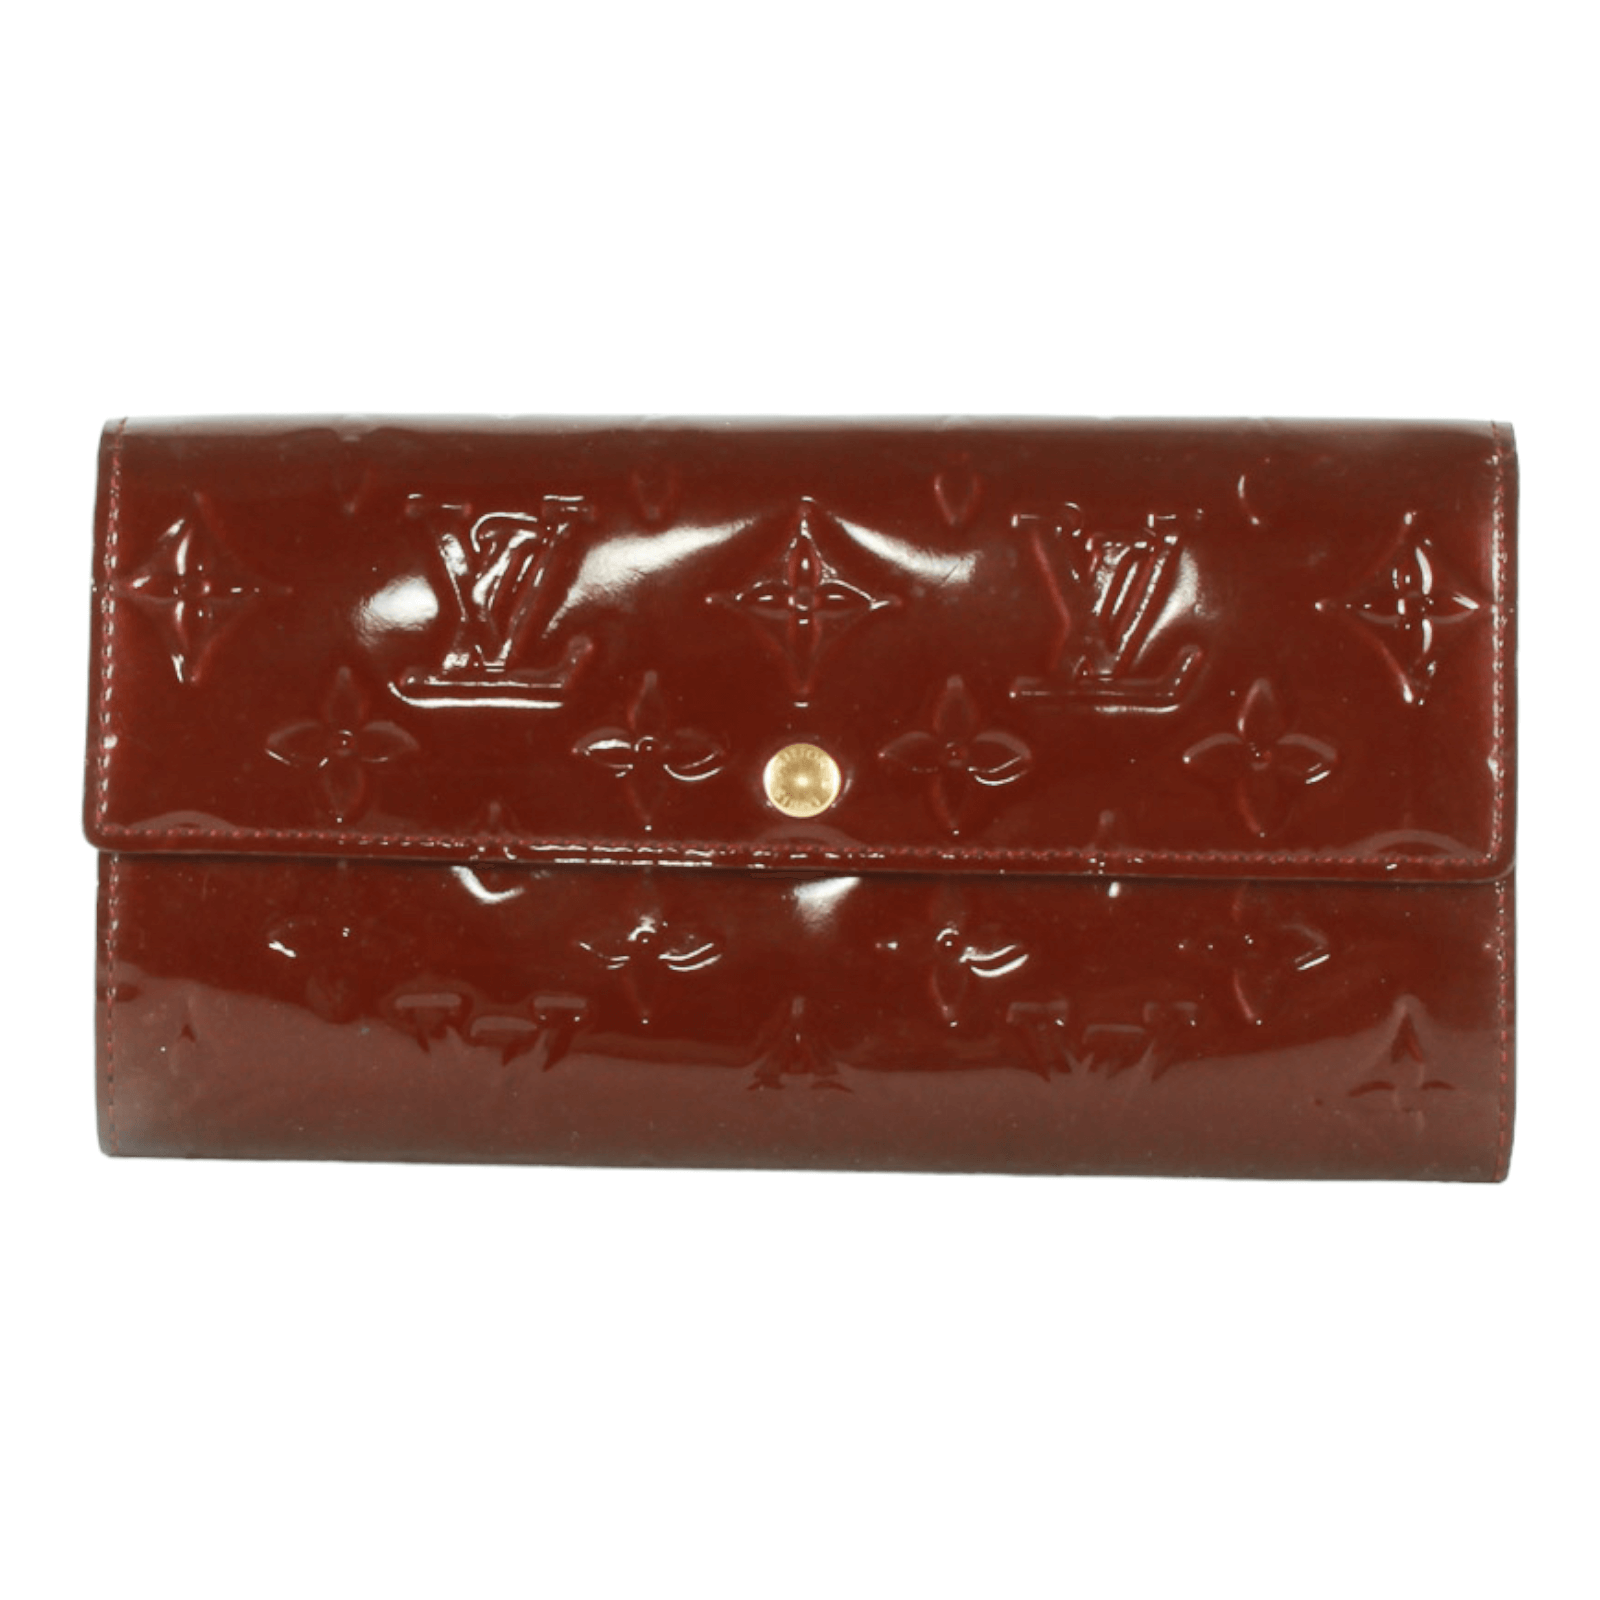 Authentic Louis Vuitton Monogram Vernis long Wallet